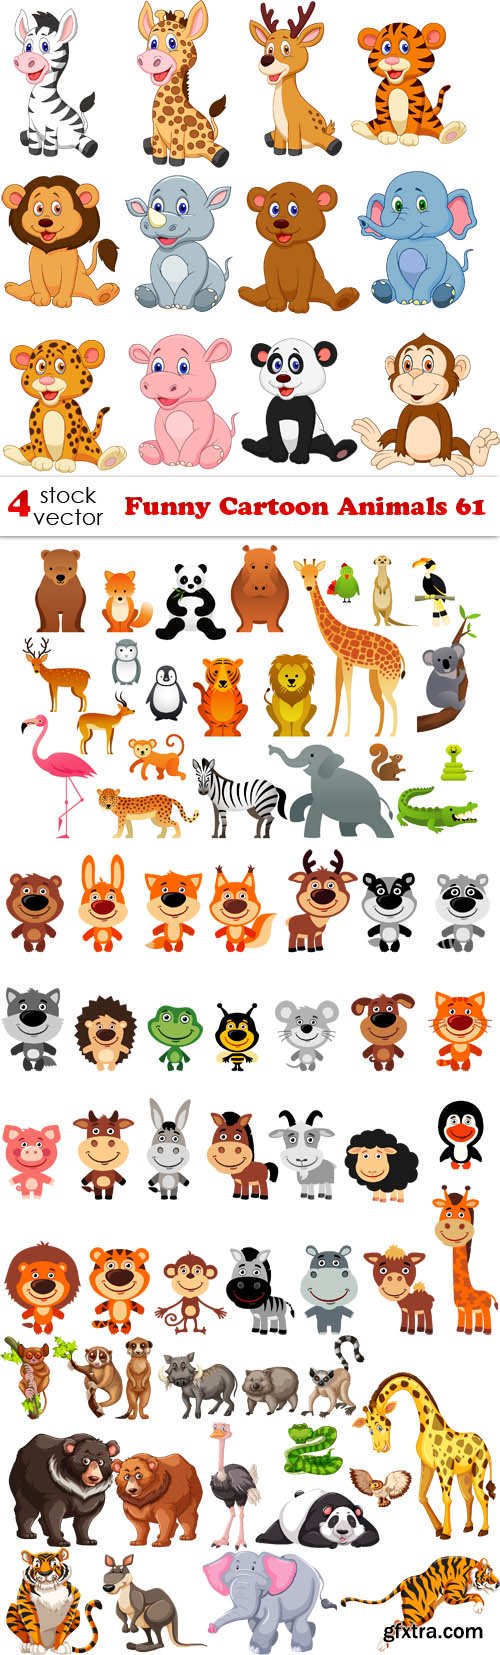 Vectors - Funny Cartoon Animals 61